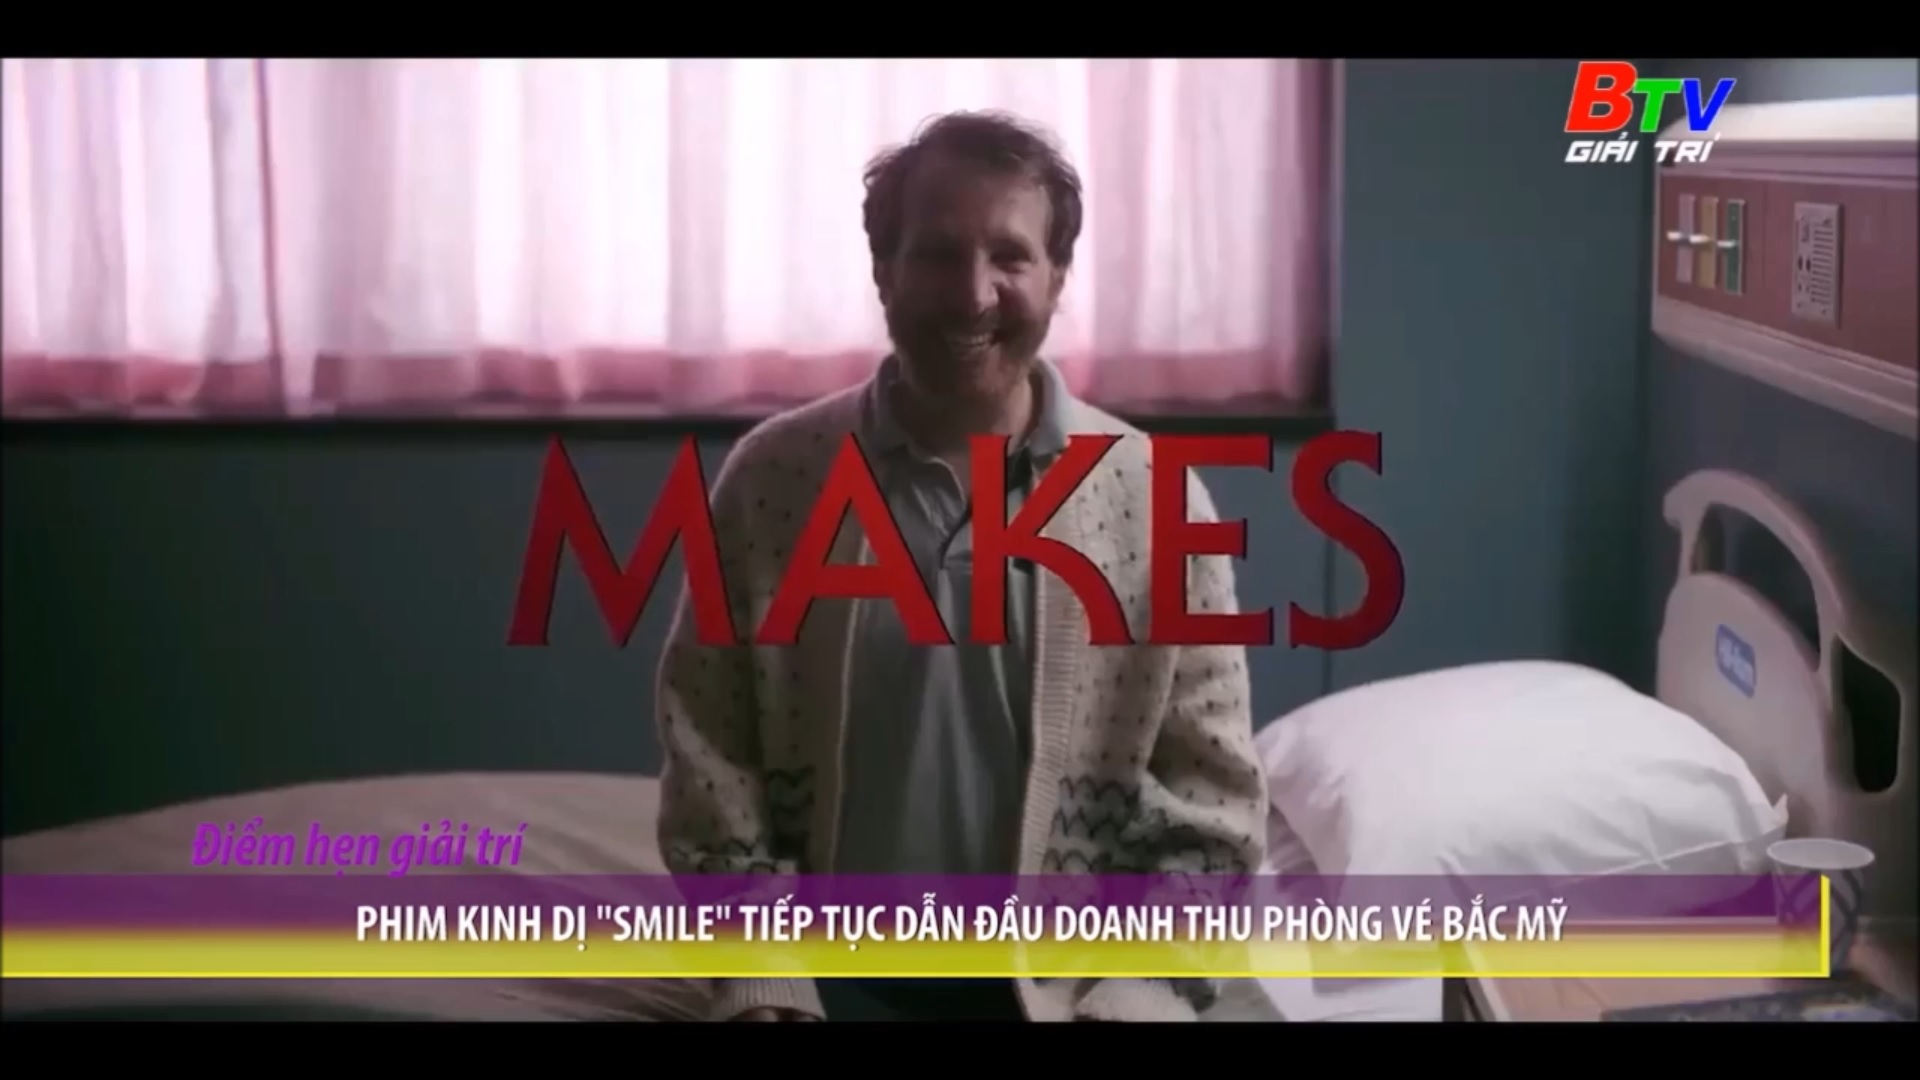 Phim kinh dị “Smile” tiếp tục dẫn đầu doanh thu phòng vé Bắc Mỹ